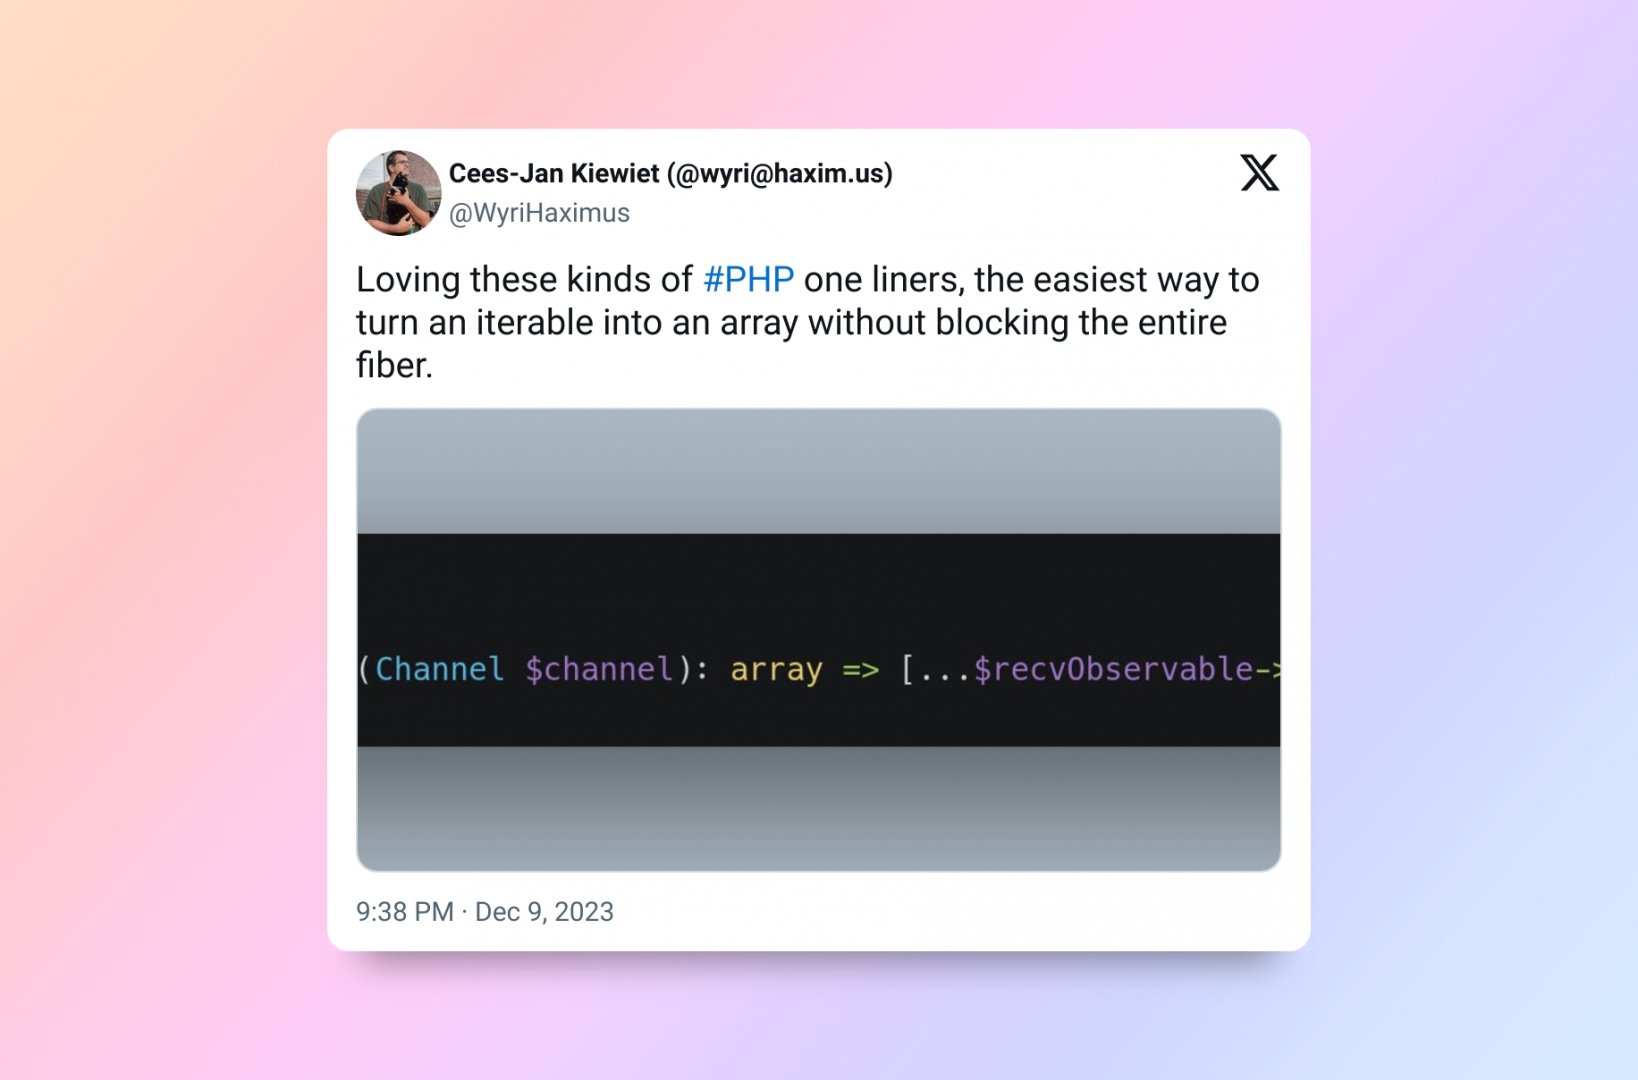 Bildausschnitt eines Twitter Beitrages von Cees-Jan Kiewiet über Vorteile von Code Einzeilern und deren schlechte Code Quality.